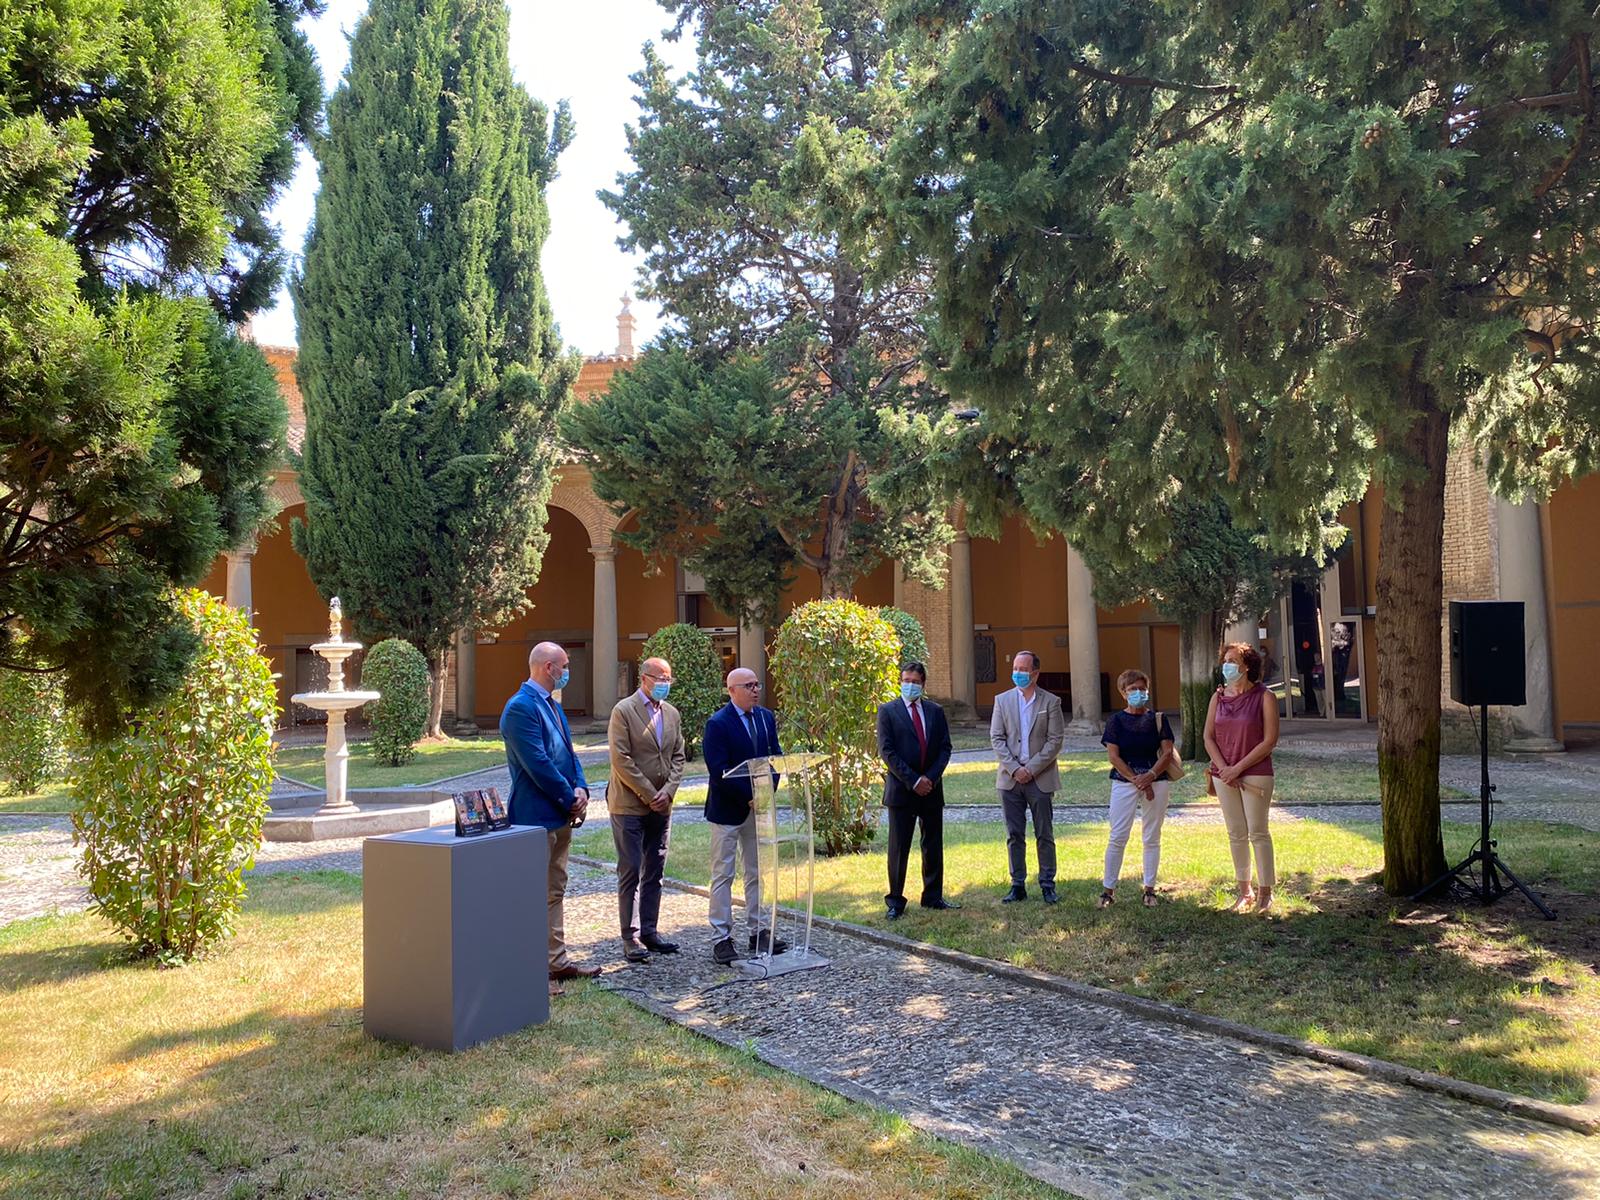 Presentación de la Guía del Museo de Huesca, acuarelas de Valentín Carderera y renovación expositiva, 29 de junio de 2020